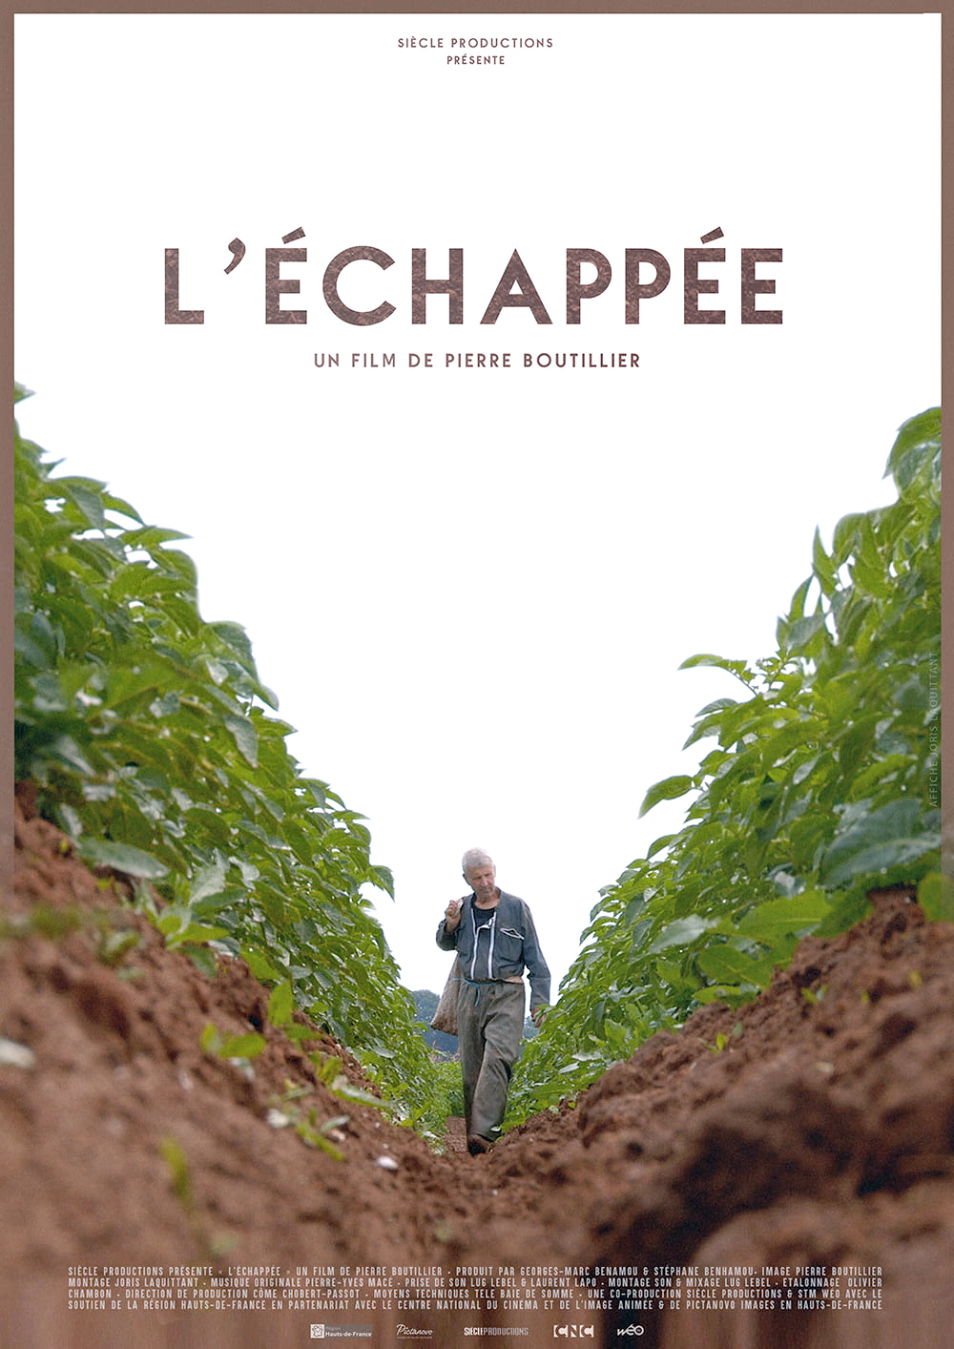 Le dernier film de Pierre Boutillier qui porte le titre de L’Échappée raconte l’histoire d’une famille d’agriculteurs, les Vicart installés à Cramont, dans leur parcours de conversion à l’agriculture bio. 